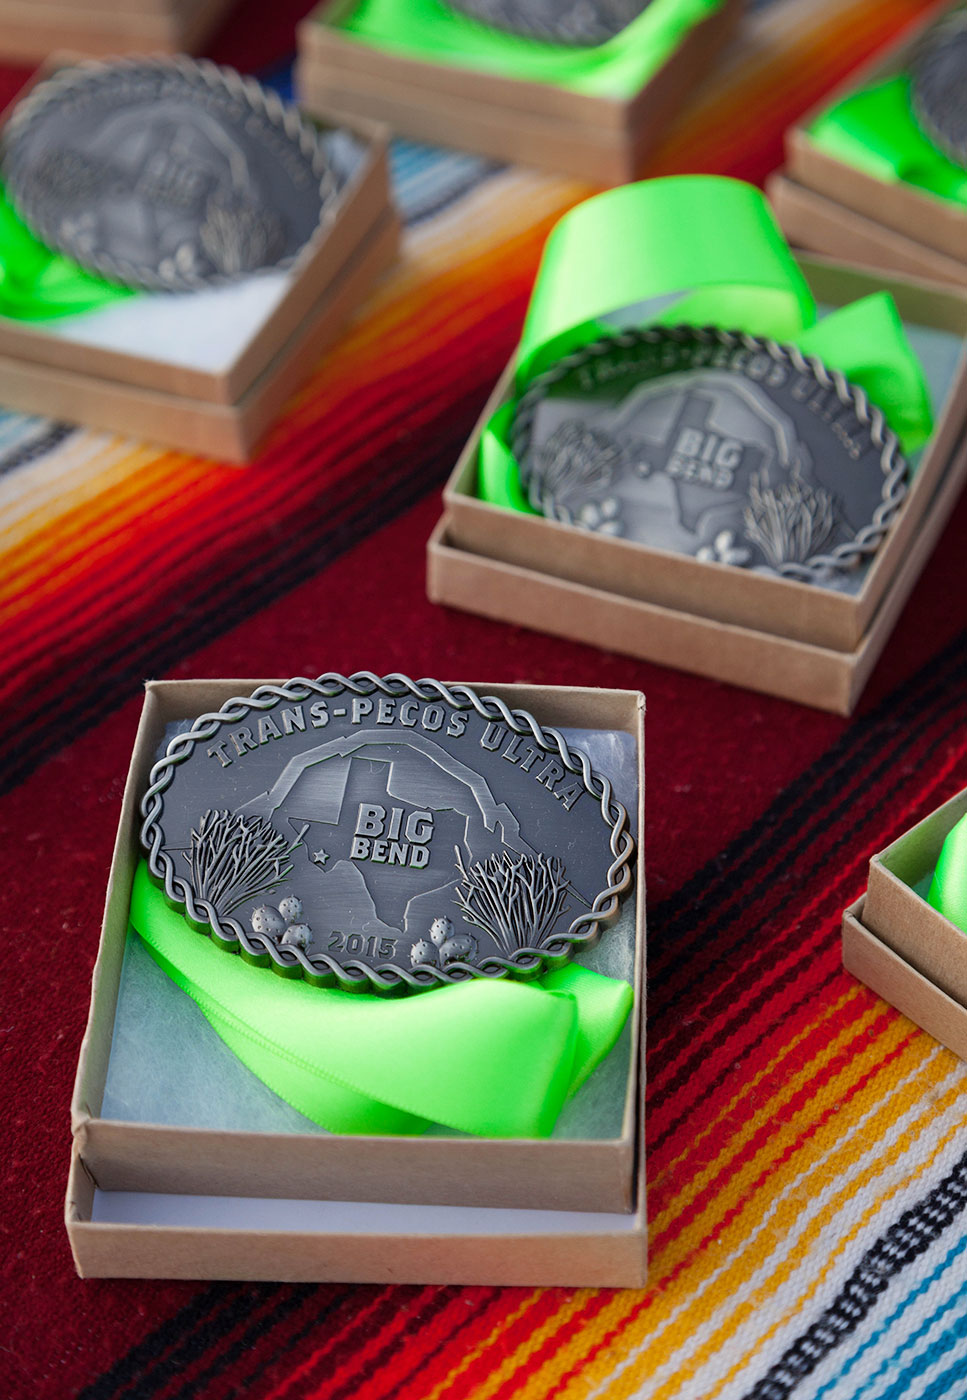 Trans-Pecos-Ultra-ABP-medals.jpg